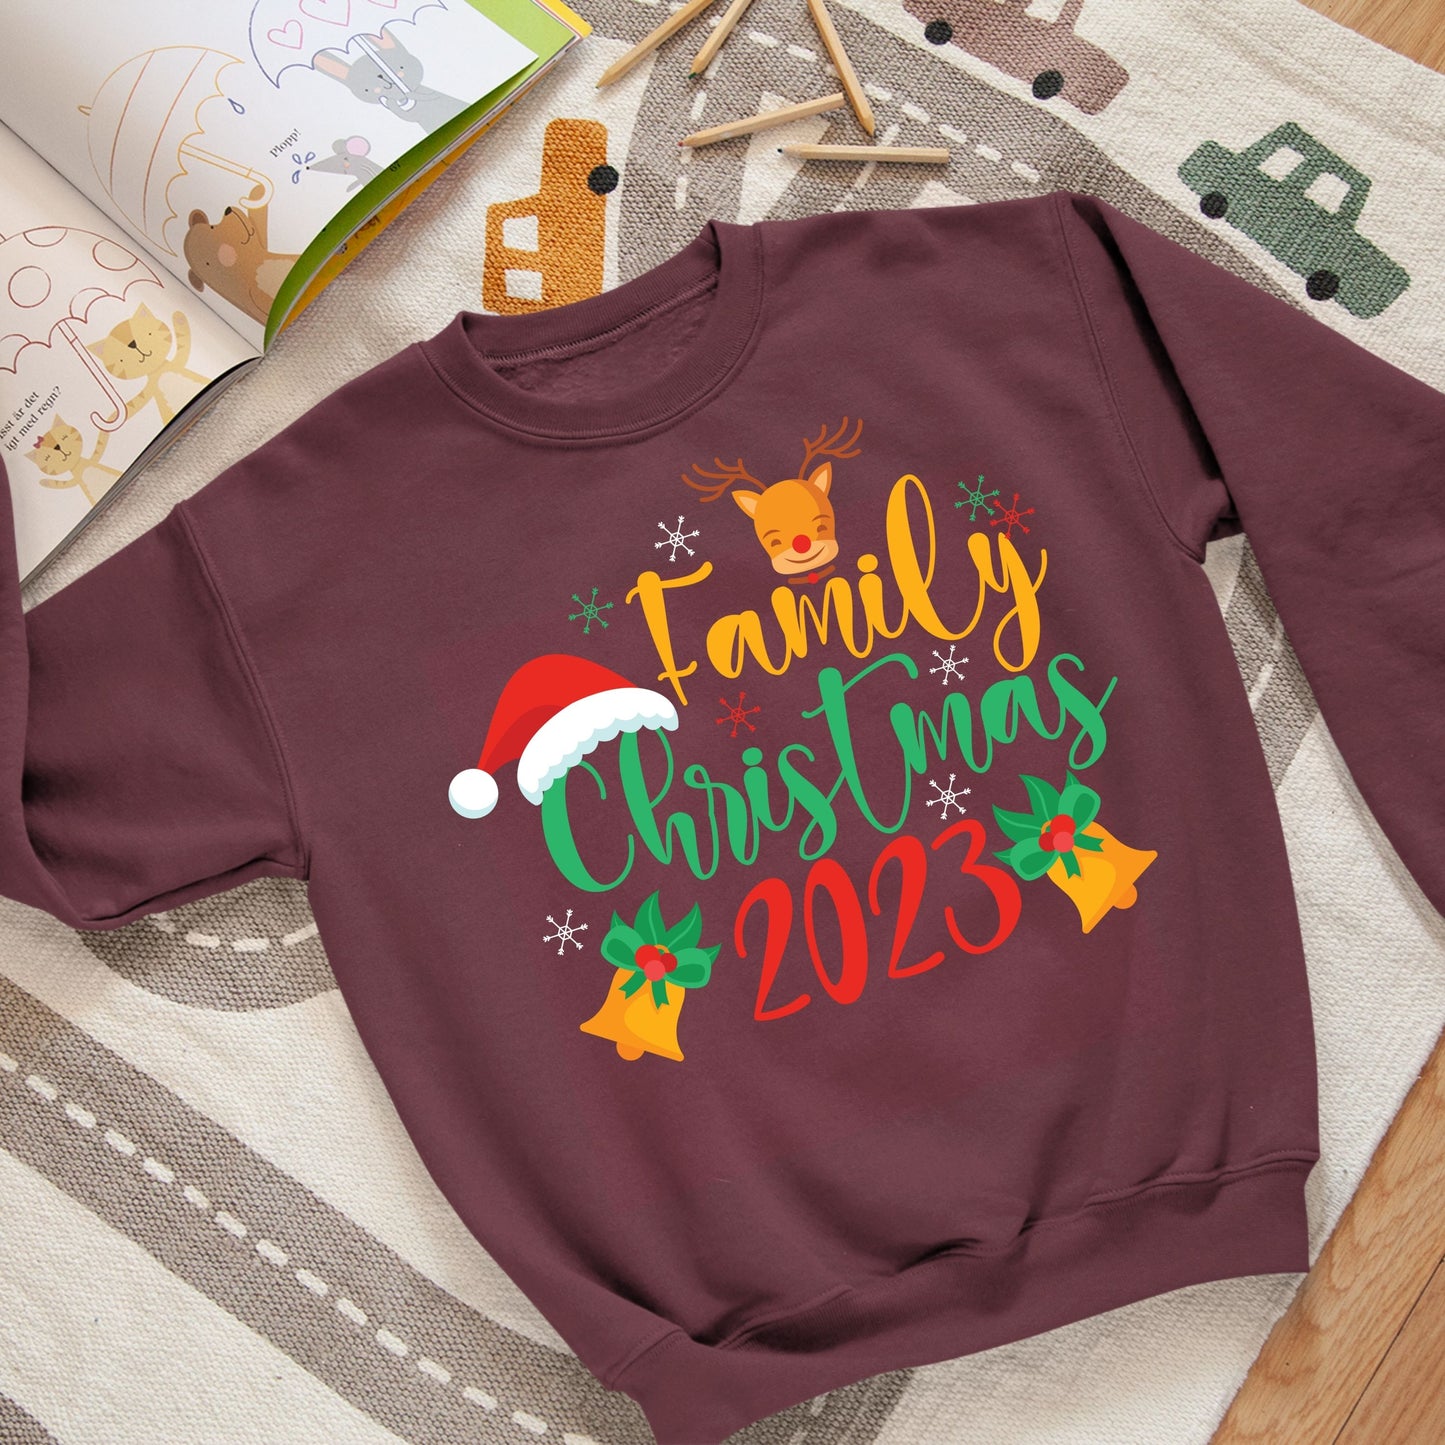 Family Christmas 2023, Christmas Long Sleeves, Christmas Crewneck For Youth, Christmas Sweatshirt, Christmas Sweater, Christmas Present